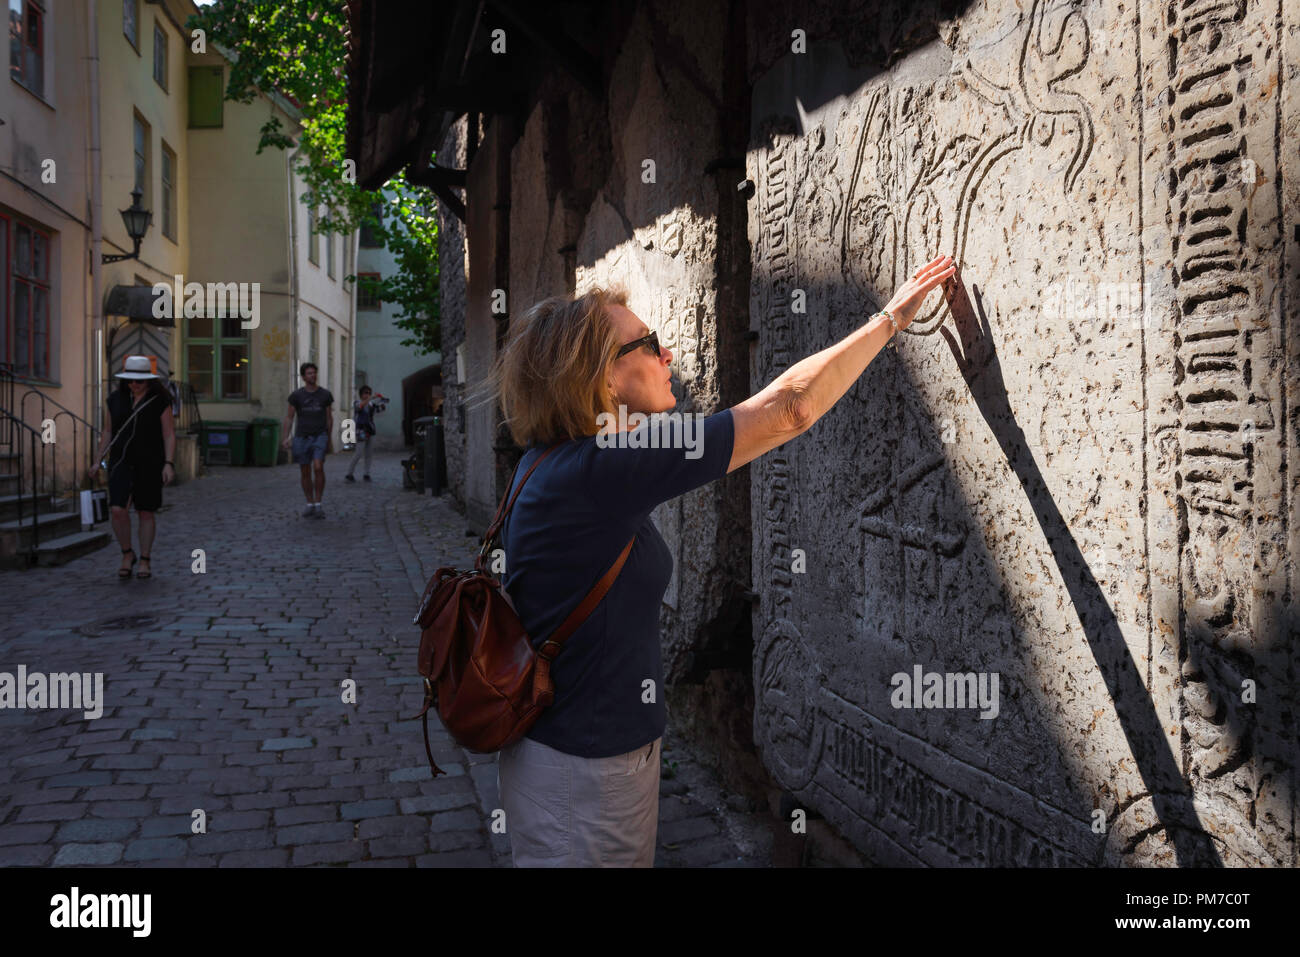 Mujer viaje explorar, vista de una mujer adulta viajero tocando una lápida medieval en el casco antiguo histórico (Vanalinn) de la zona de Tallin, Estonia. Foto de stock